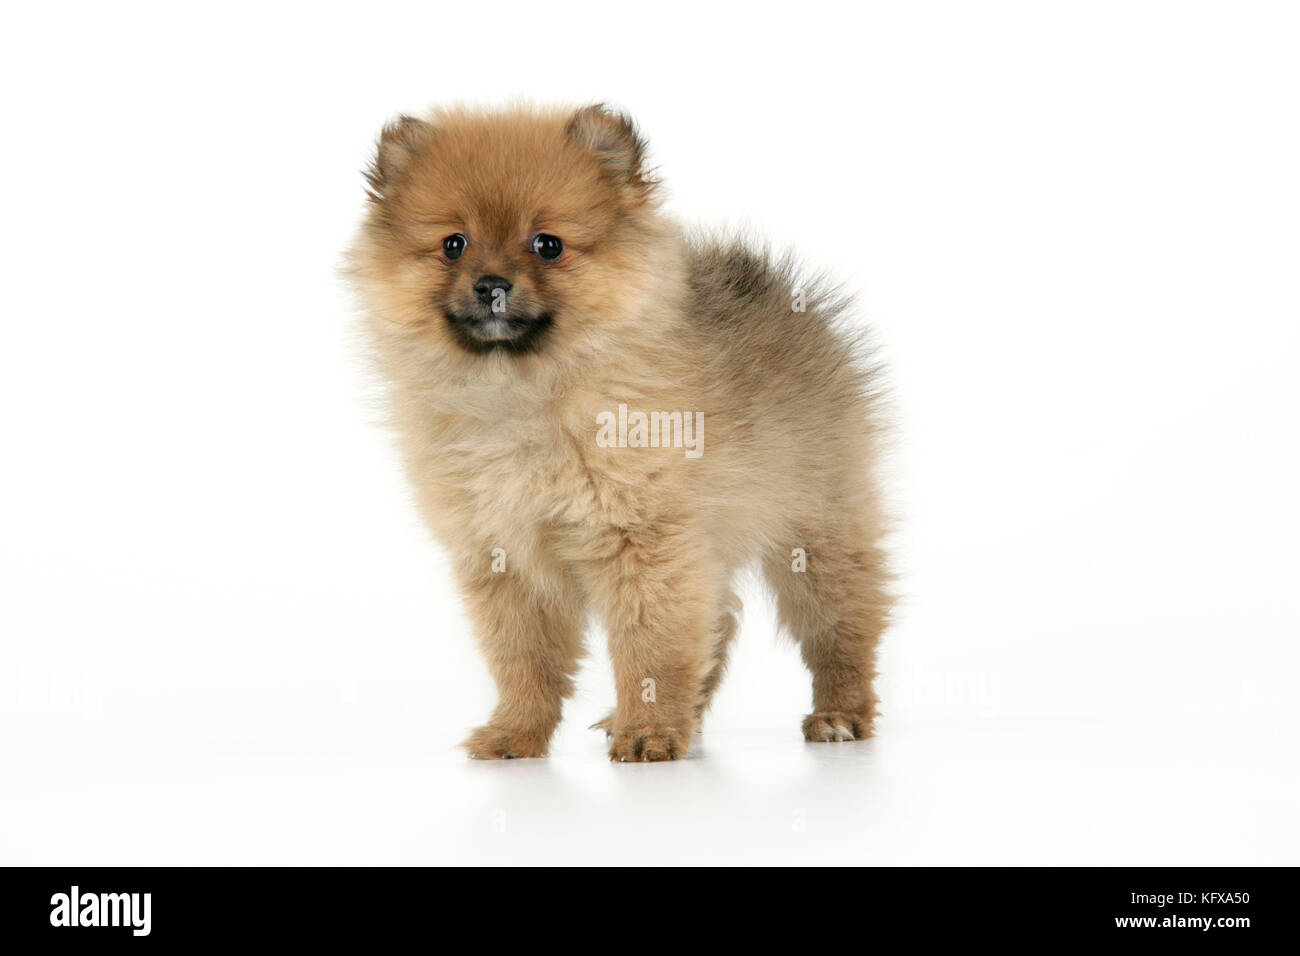 Hund. pomeranian Welpen (10 Wochen alt). Auch als Zwerg spitz bekannt  Stockfotografie - Alamy